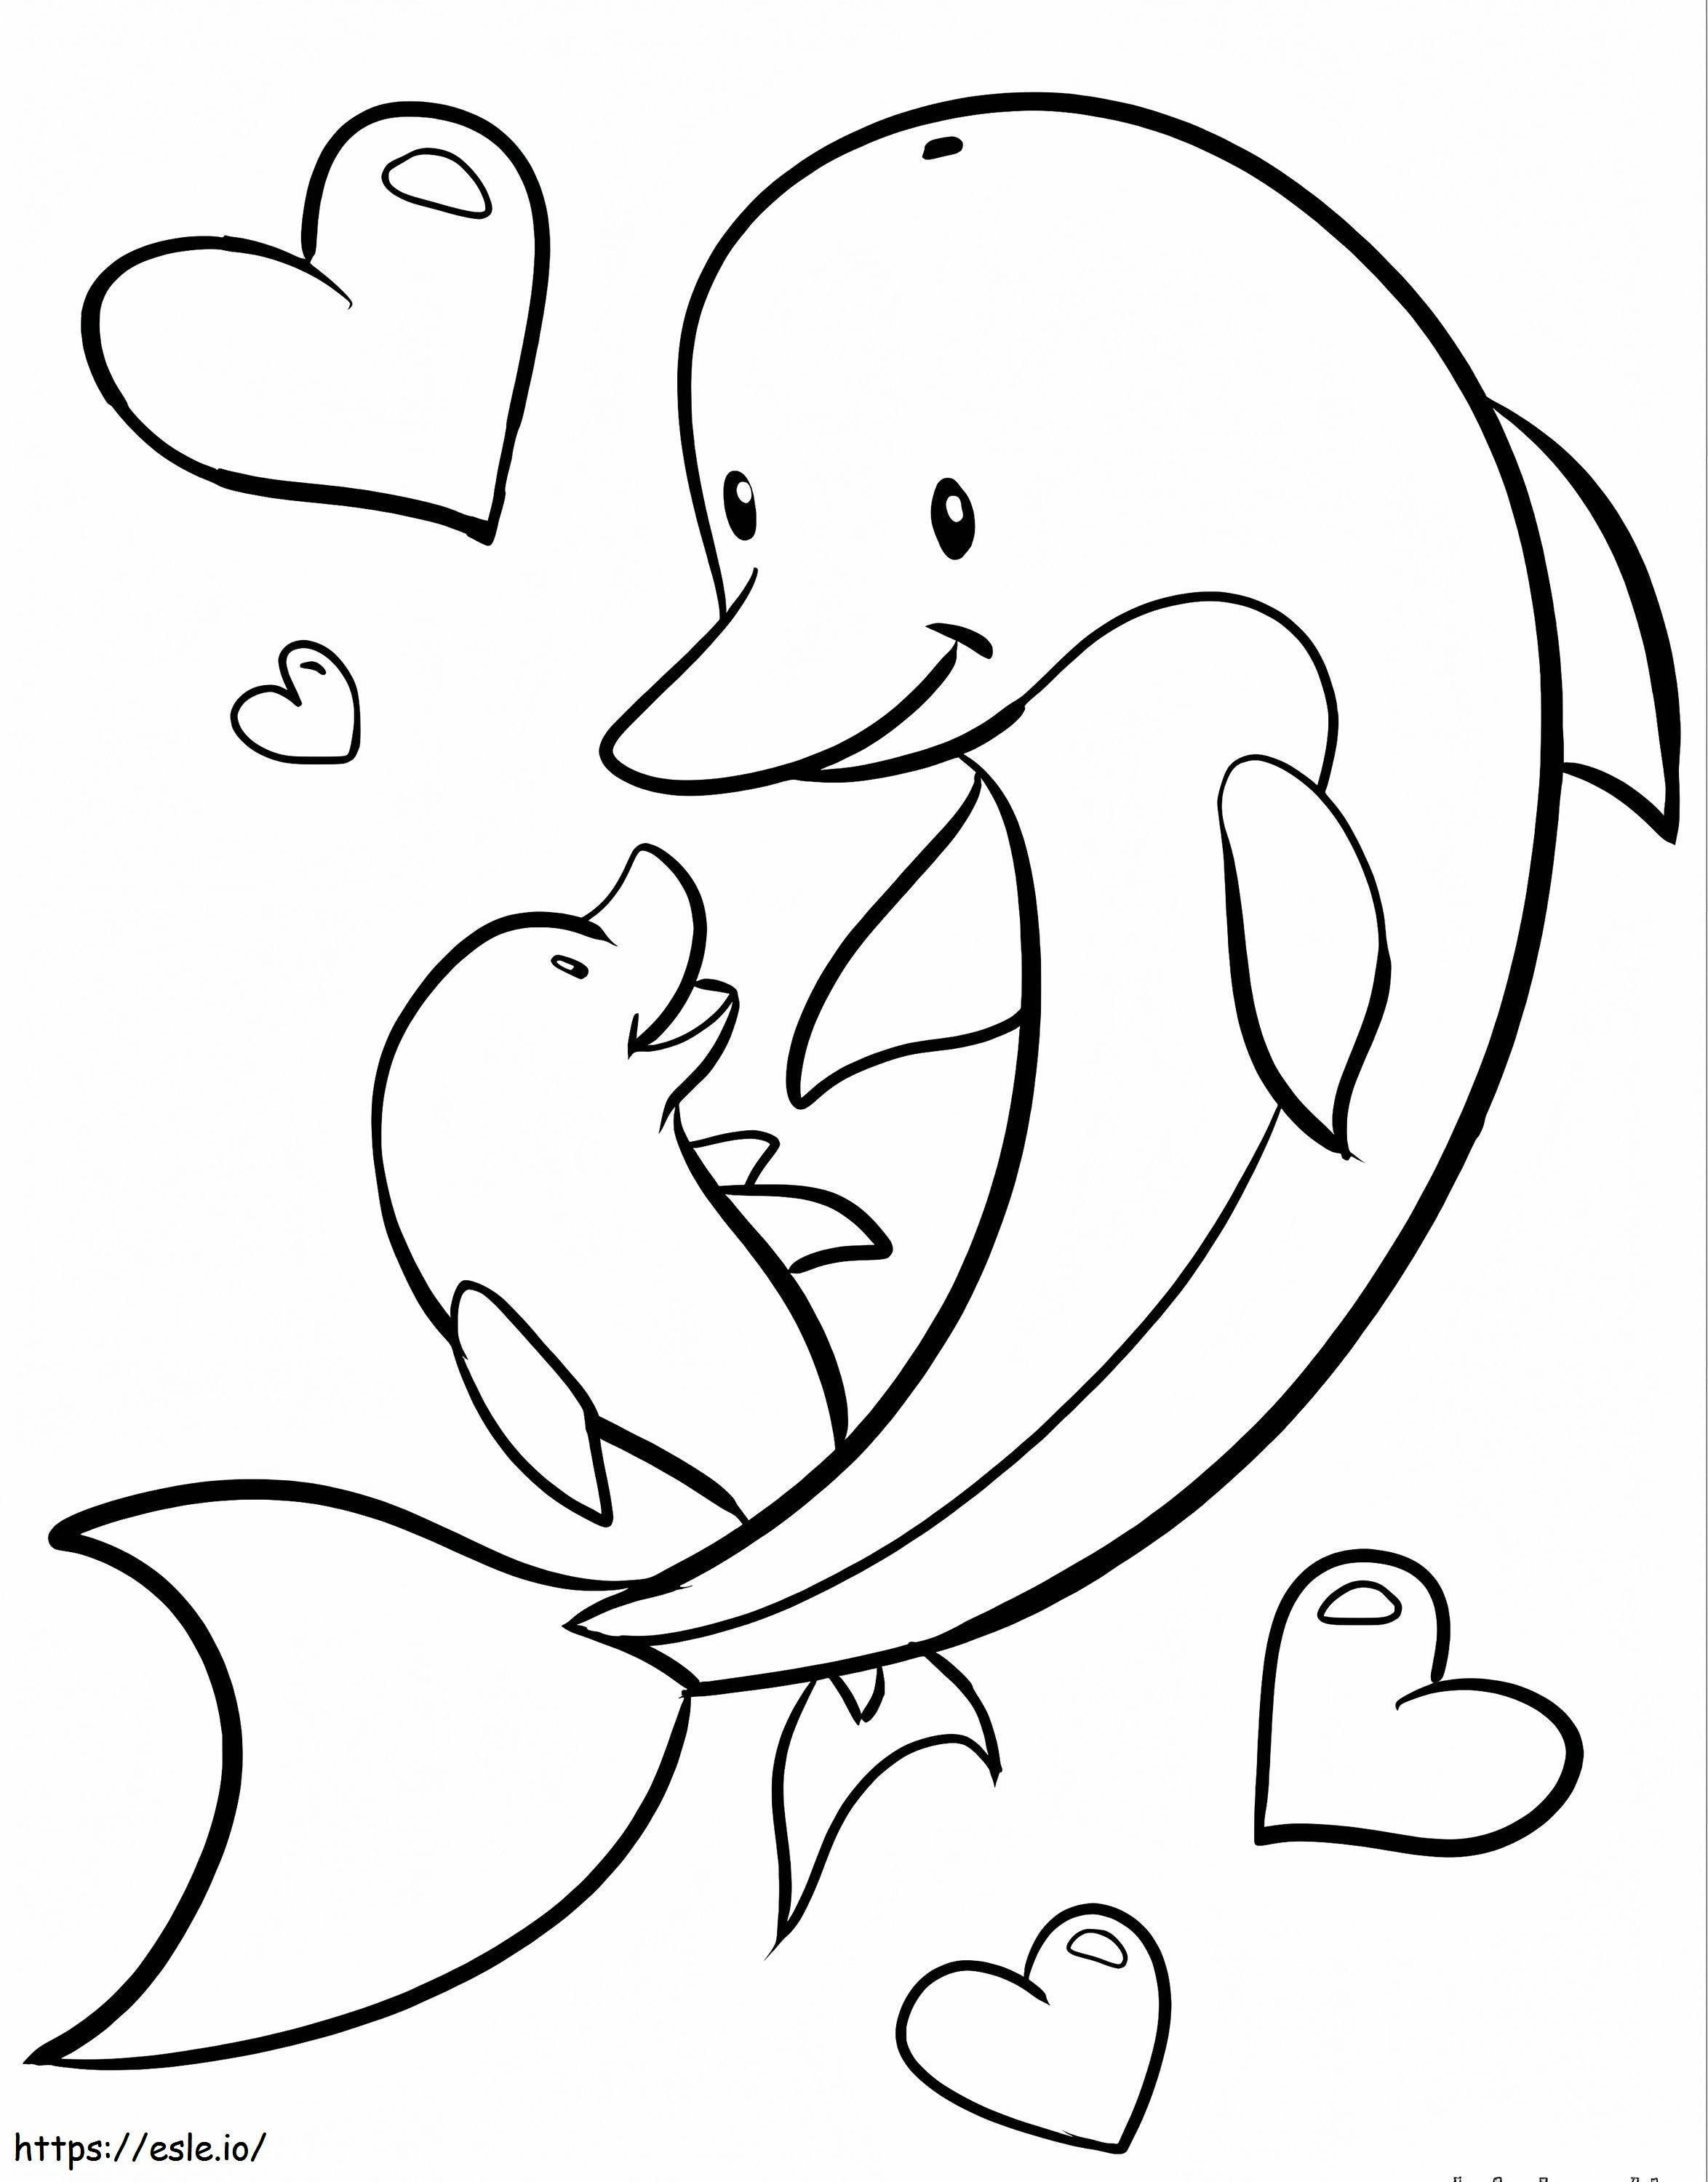 Coloriage Famille des dauphins à imprimer dessin